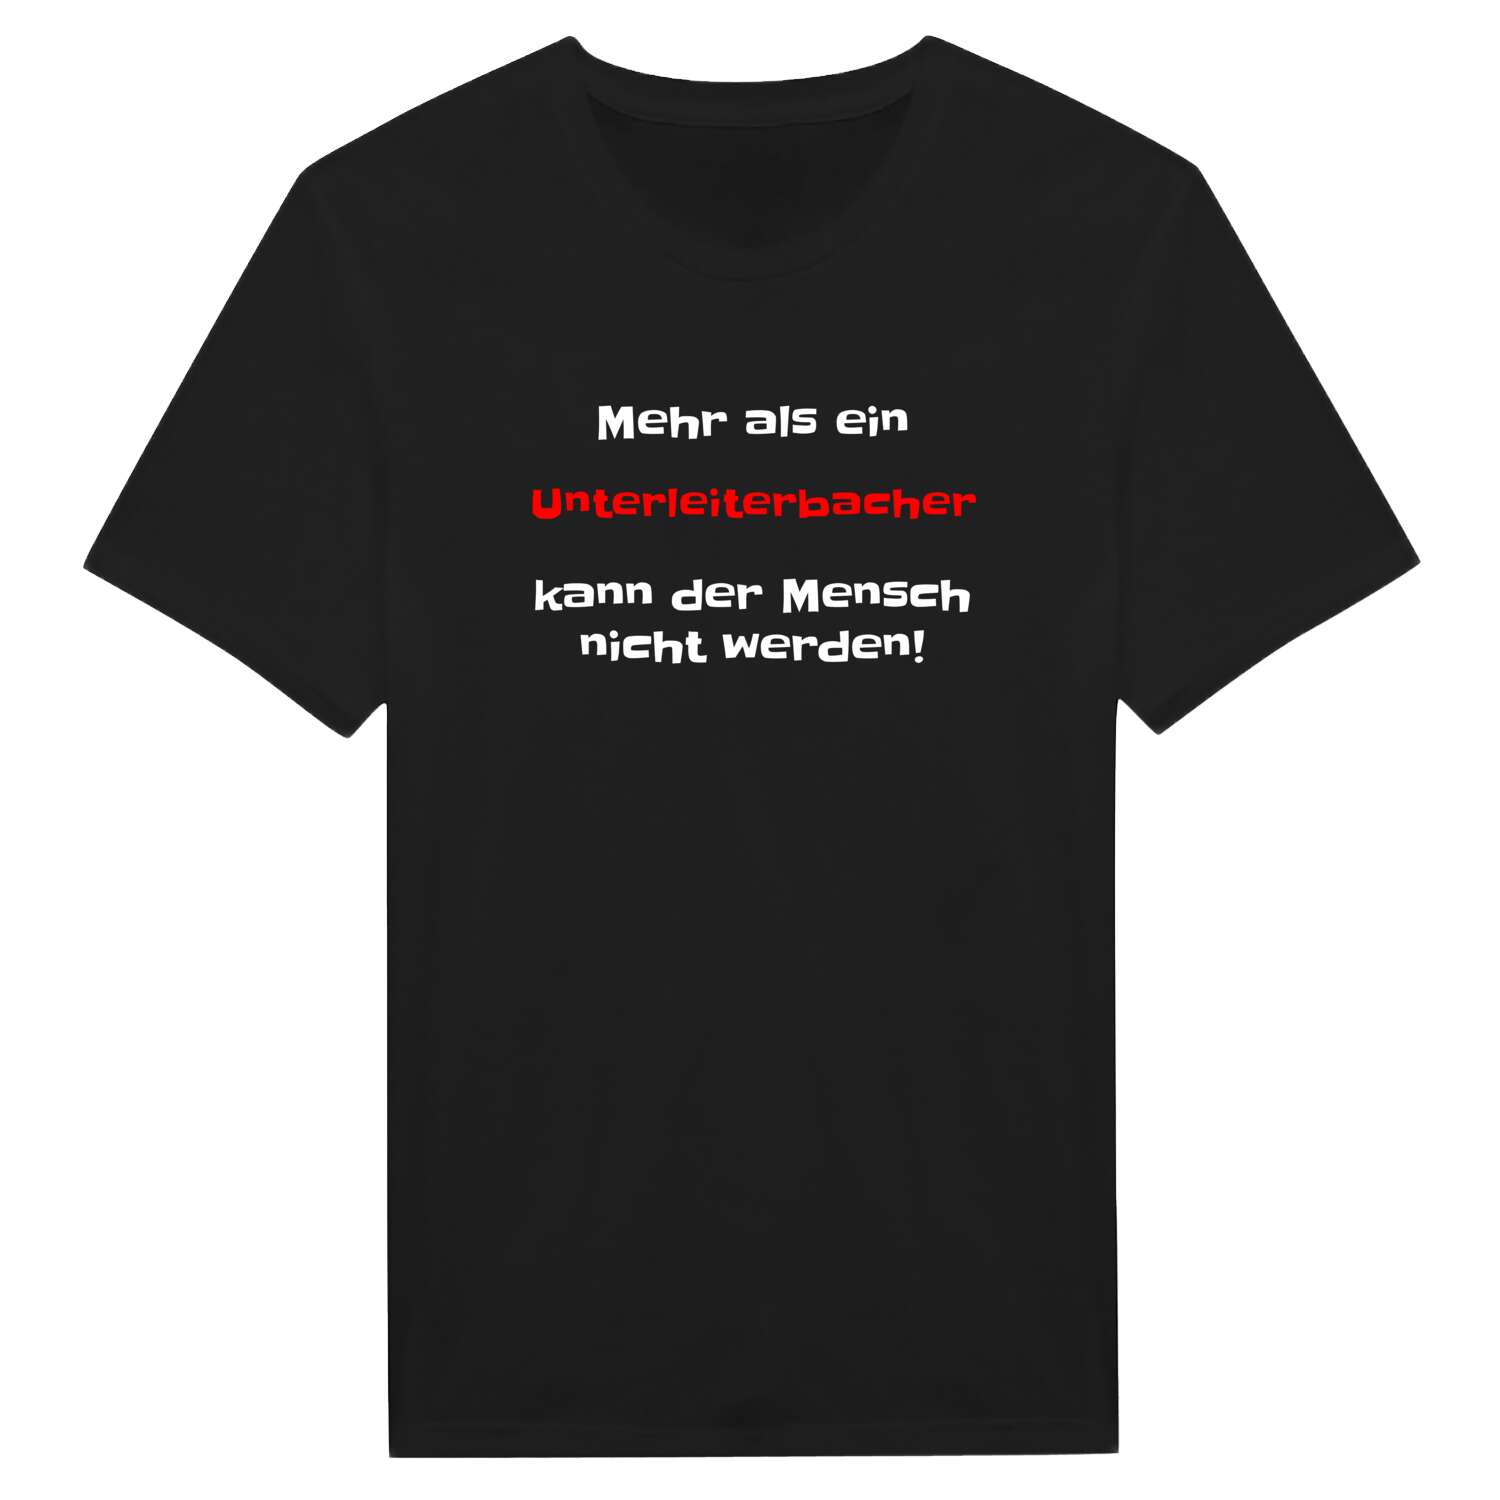 Unterleiterbach T-Shirt »Mehr als ein«